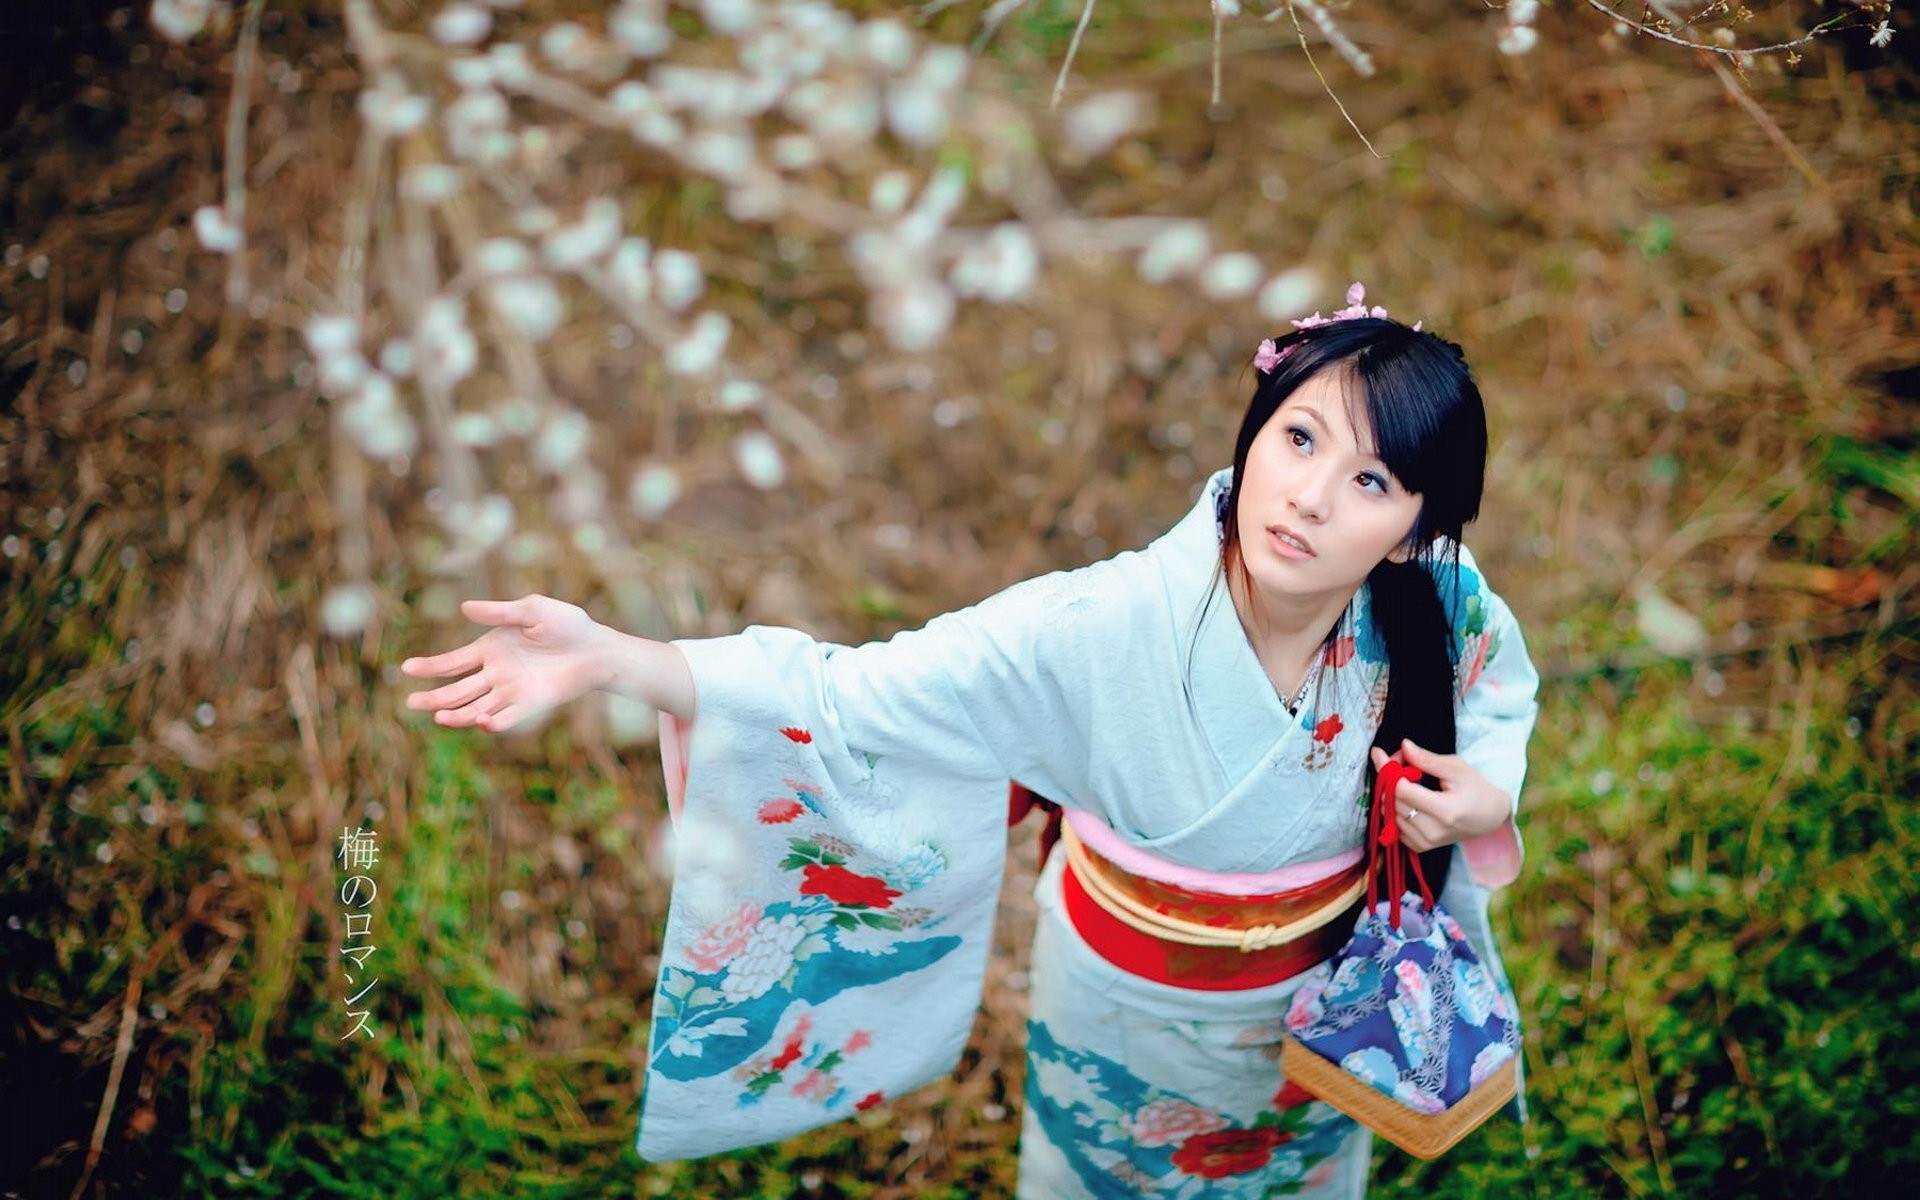 Видео красивых японских девушек. Джапаниз Энай. Японки Токио юката. Kimono певица. Японская девушка в кимоно.